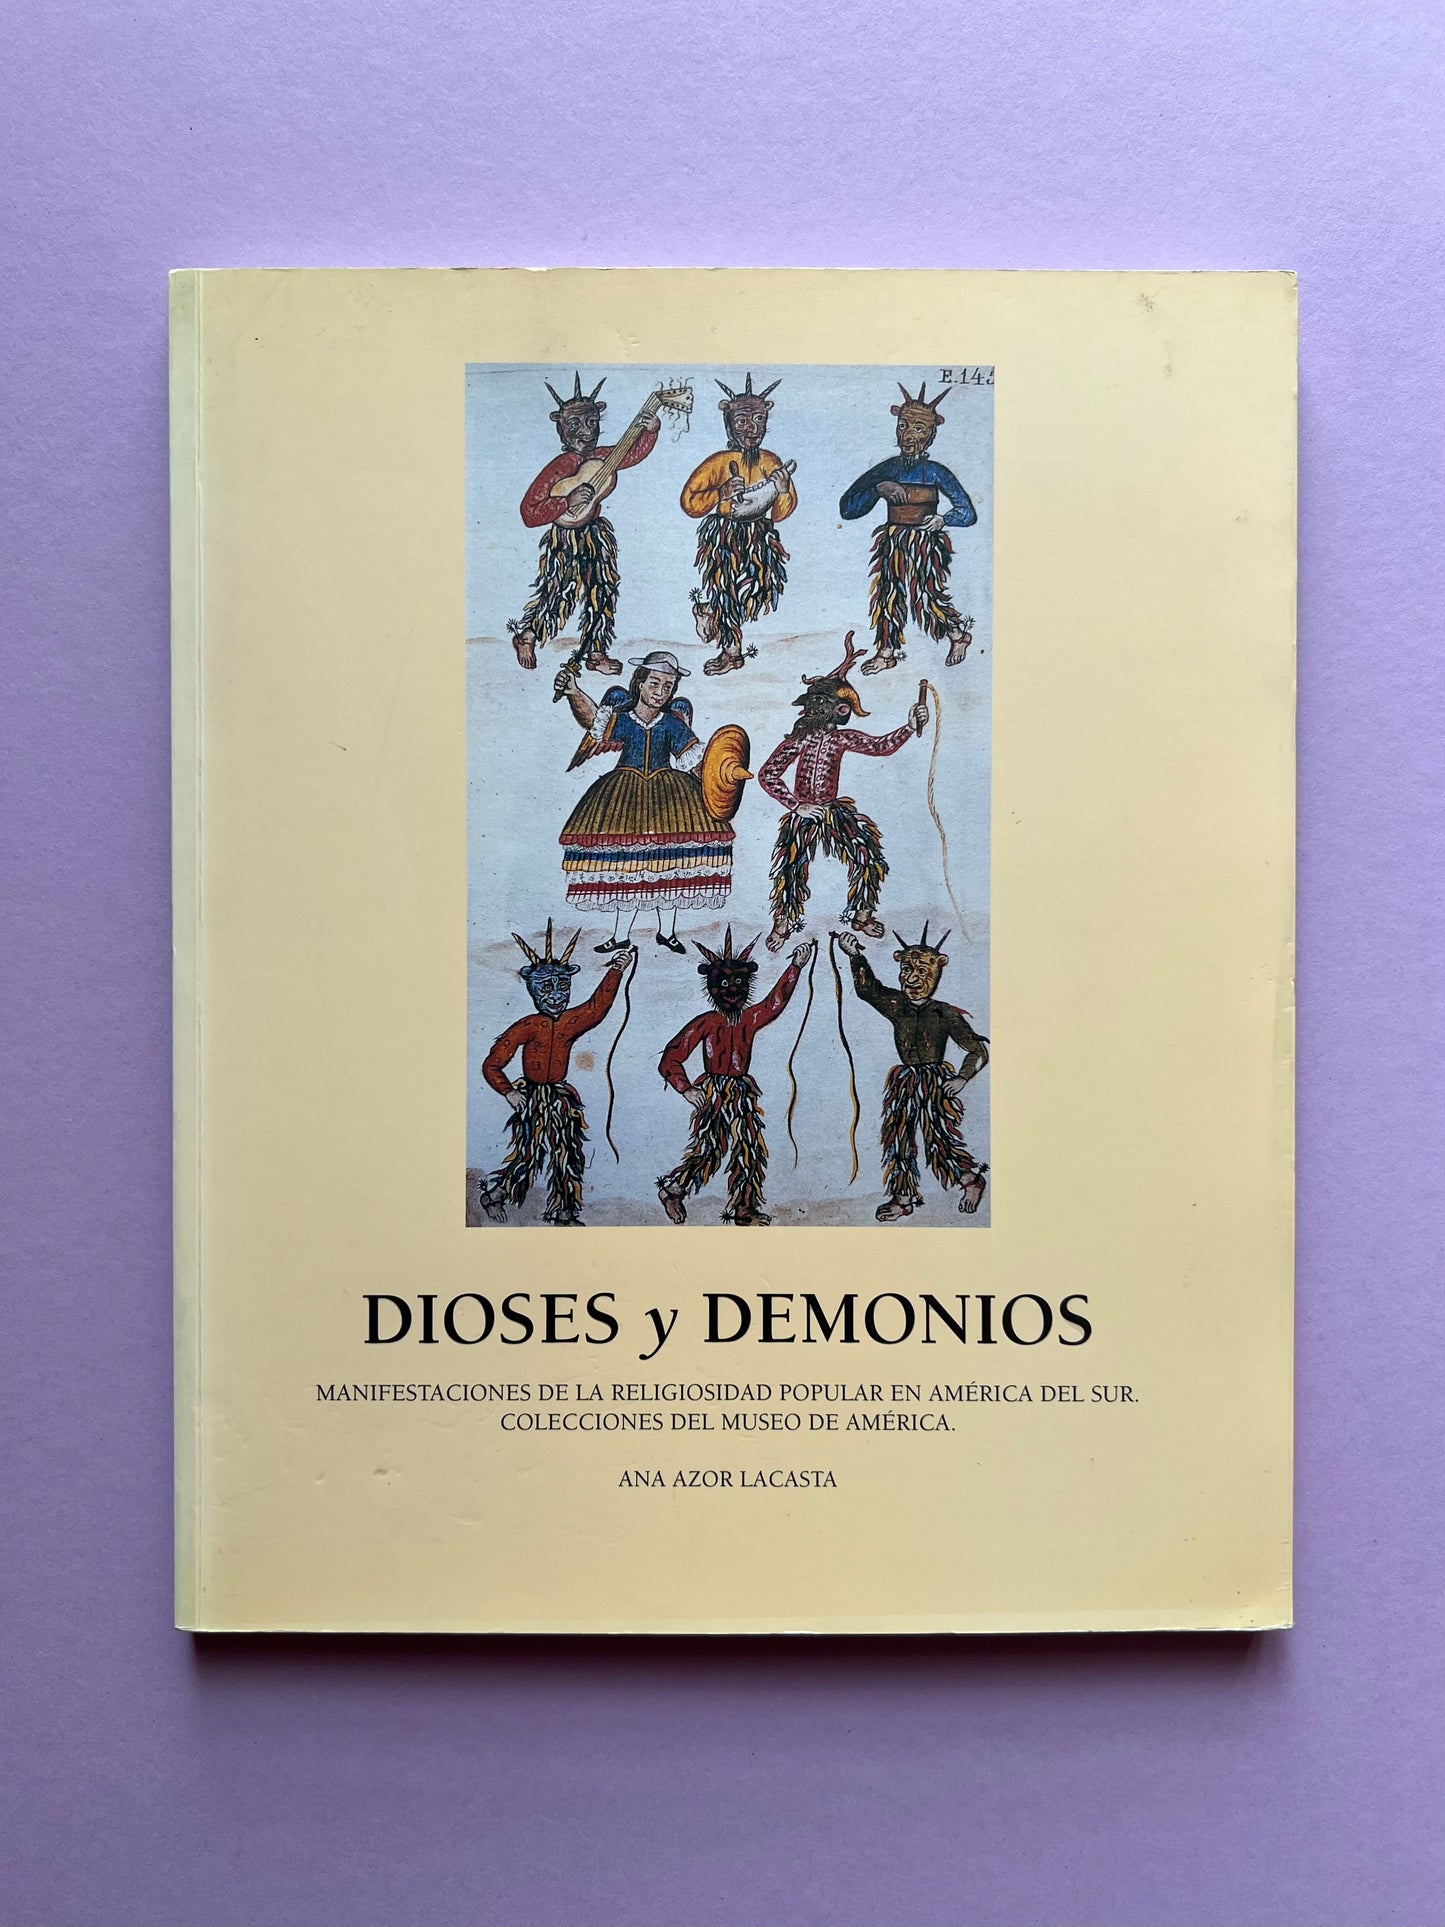 Dioses y Demonios: Manifestaciones de la religiosidad popular en América del sur